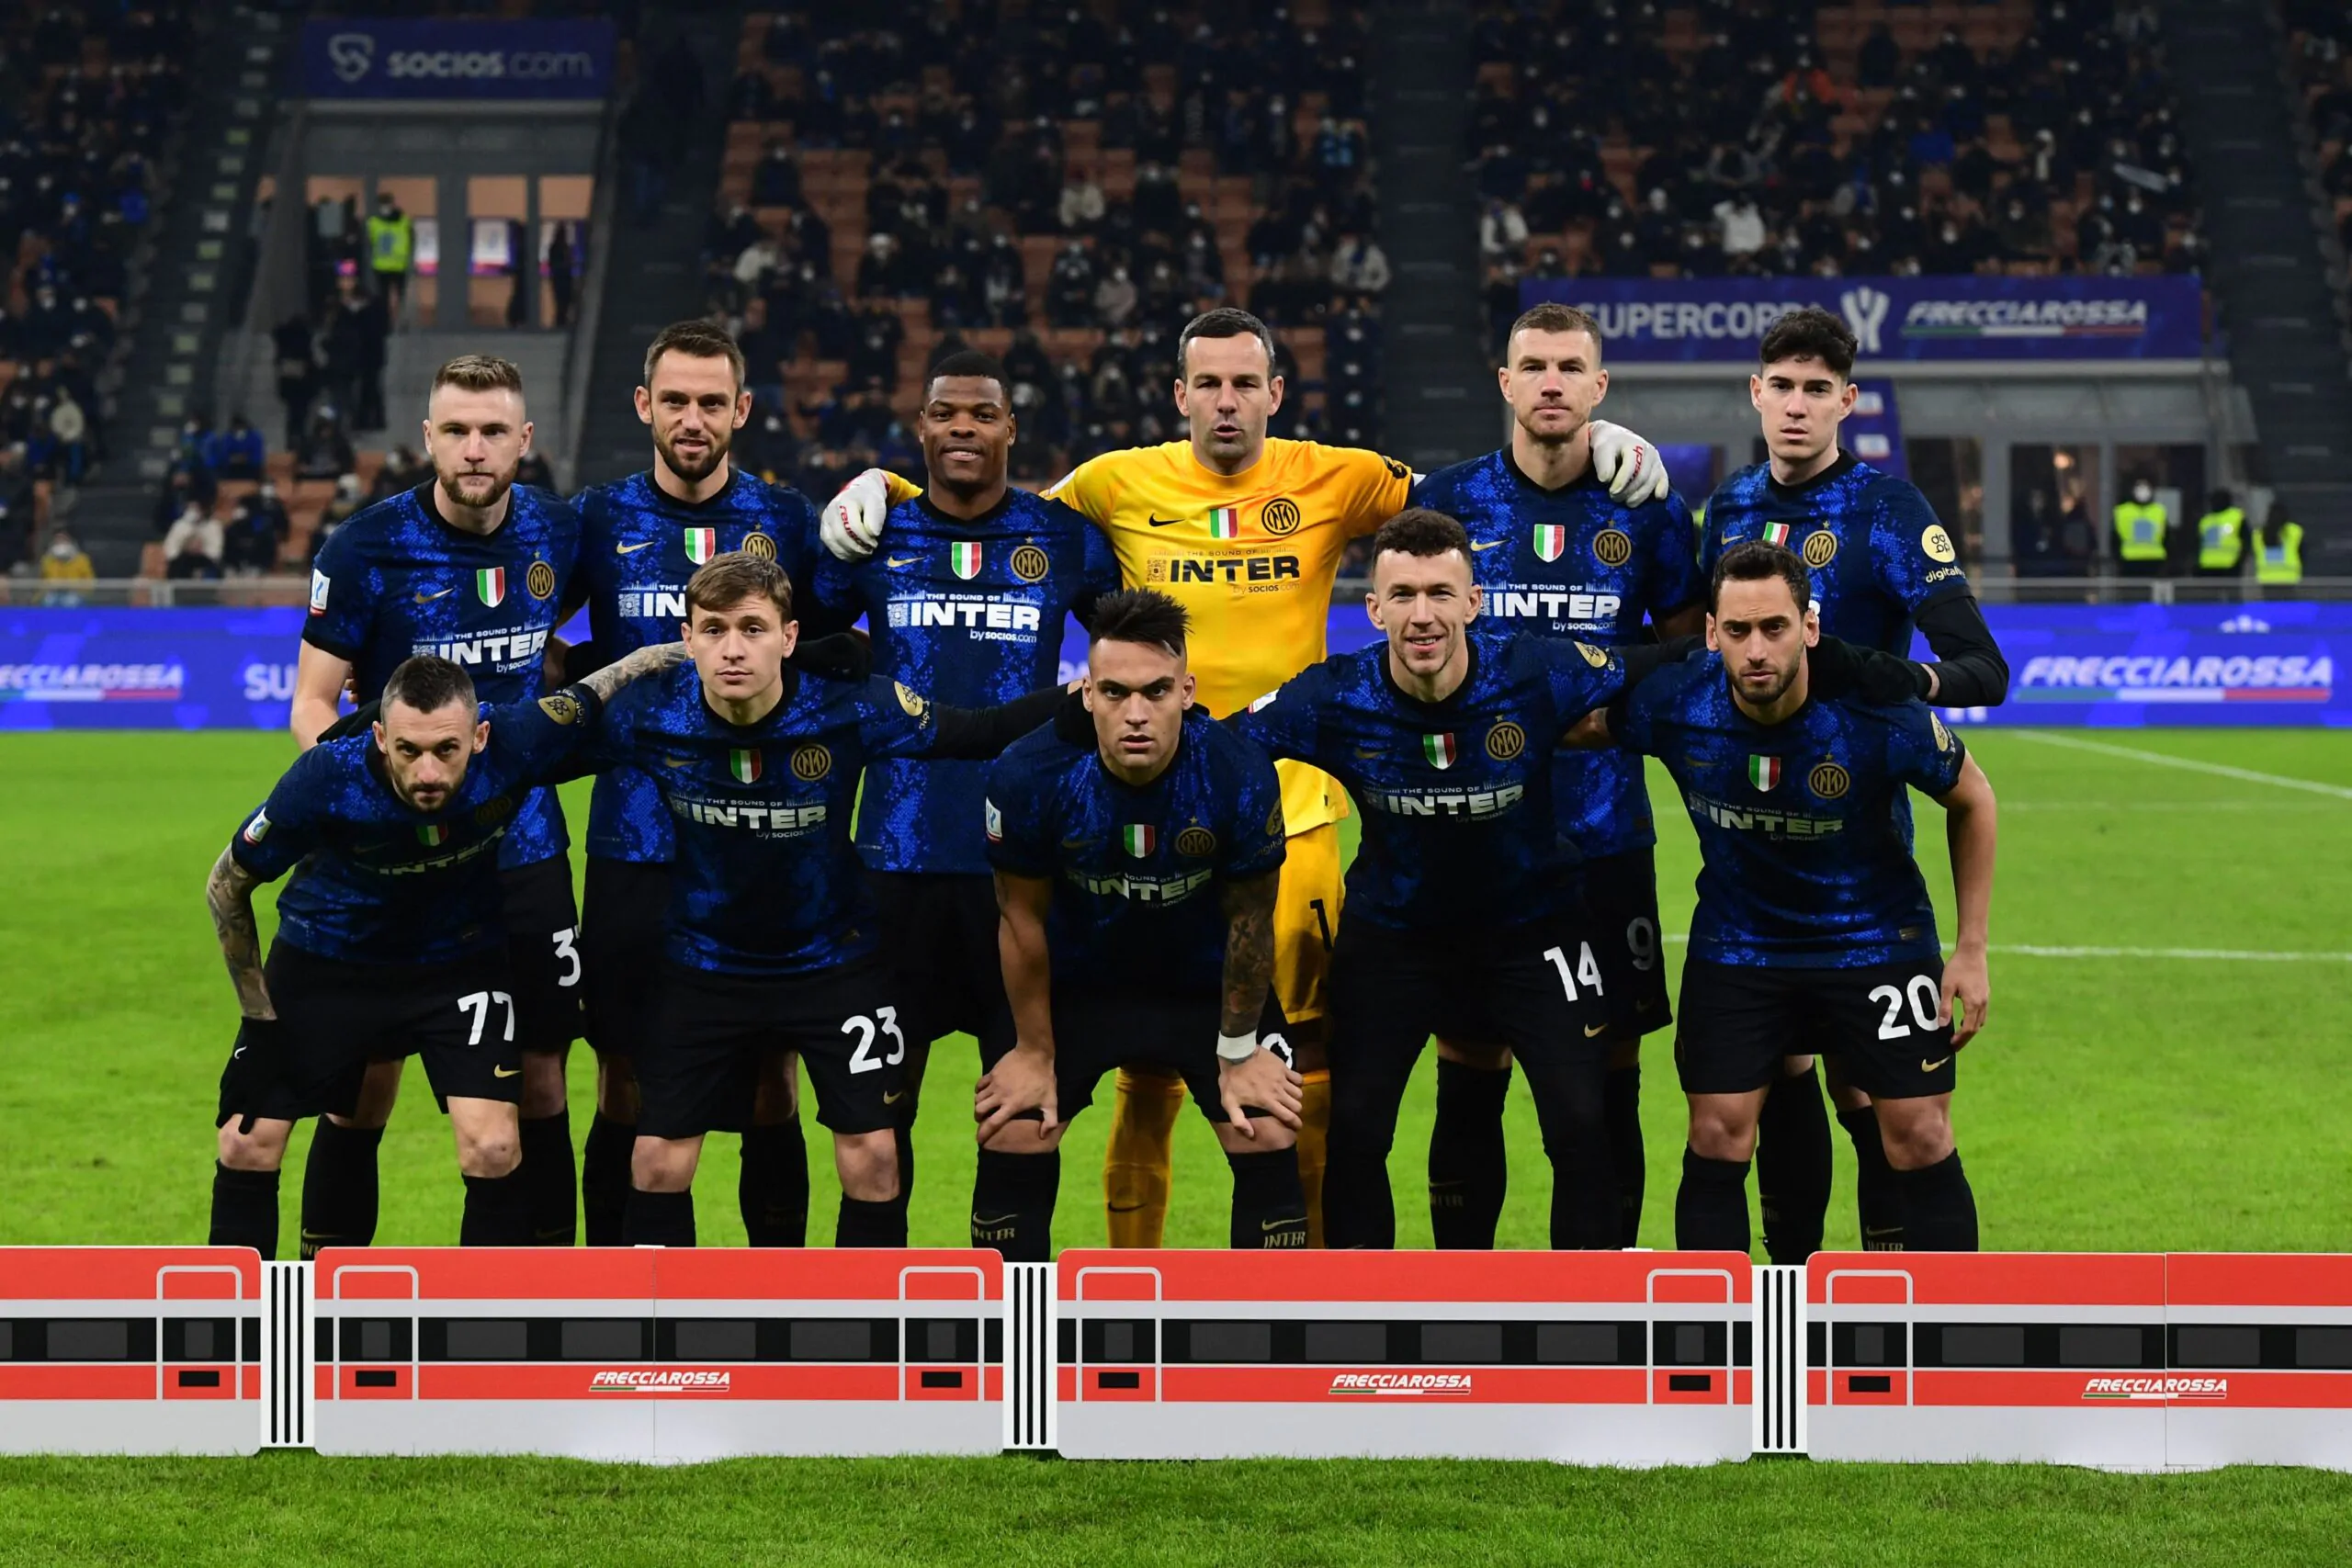 Calciomercato Inter, possibile cessione di un big: serve una super offerta